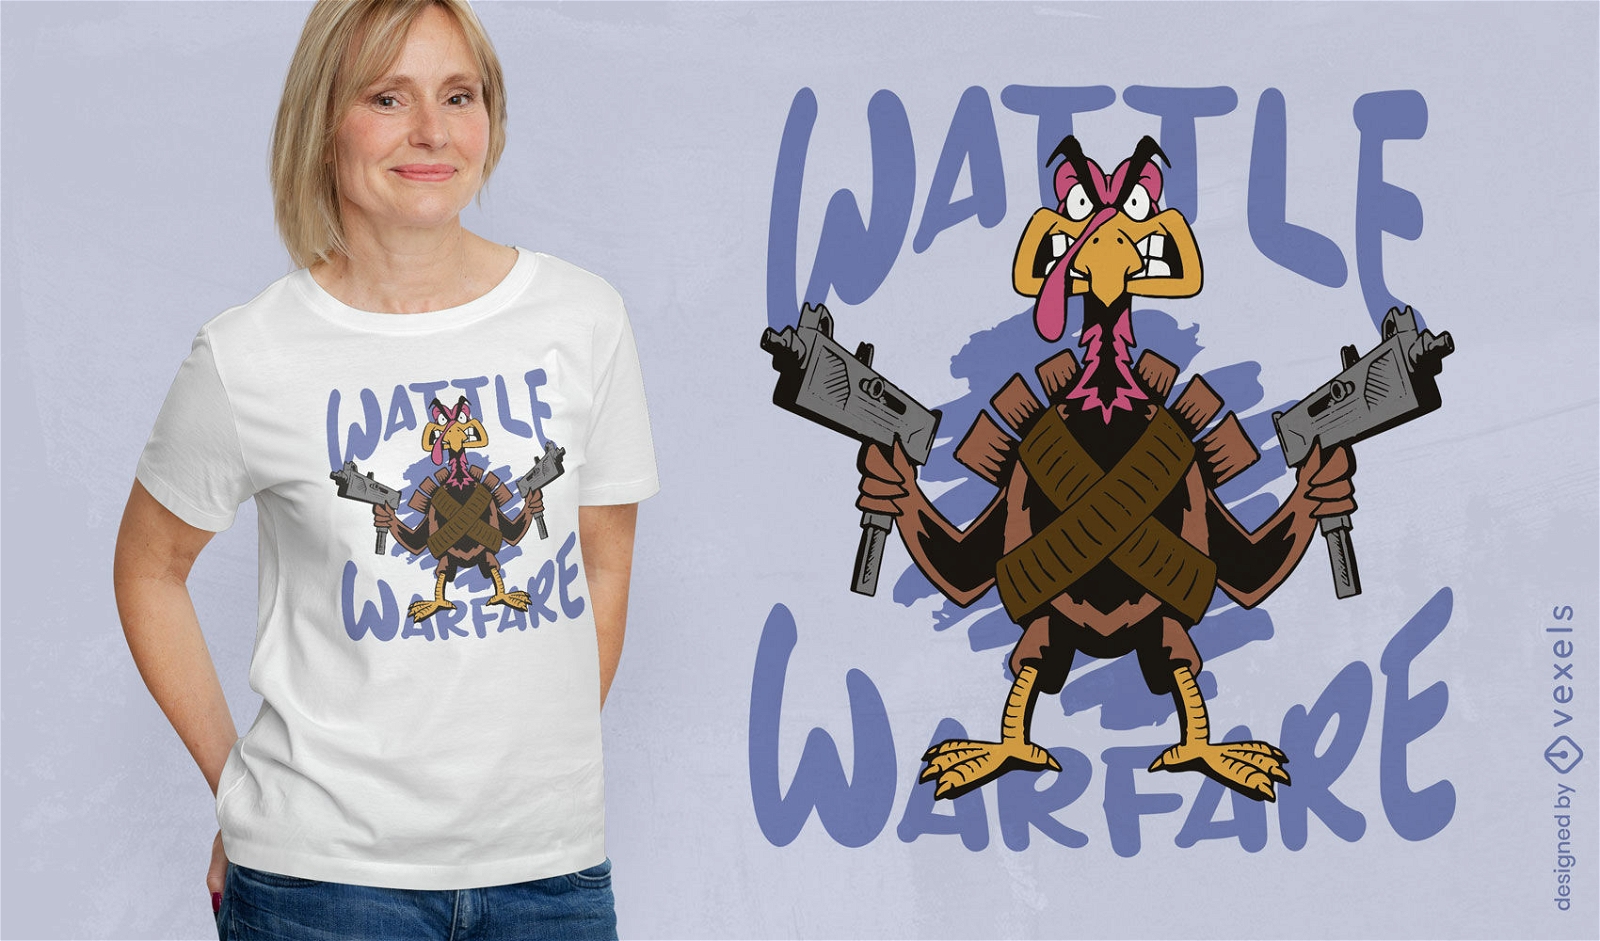 Waffle warfare turkey t-shirt design